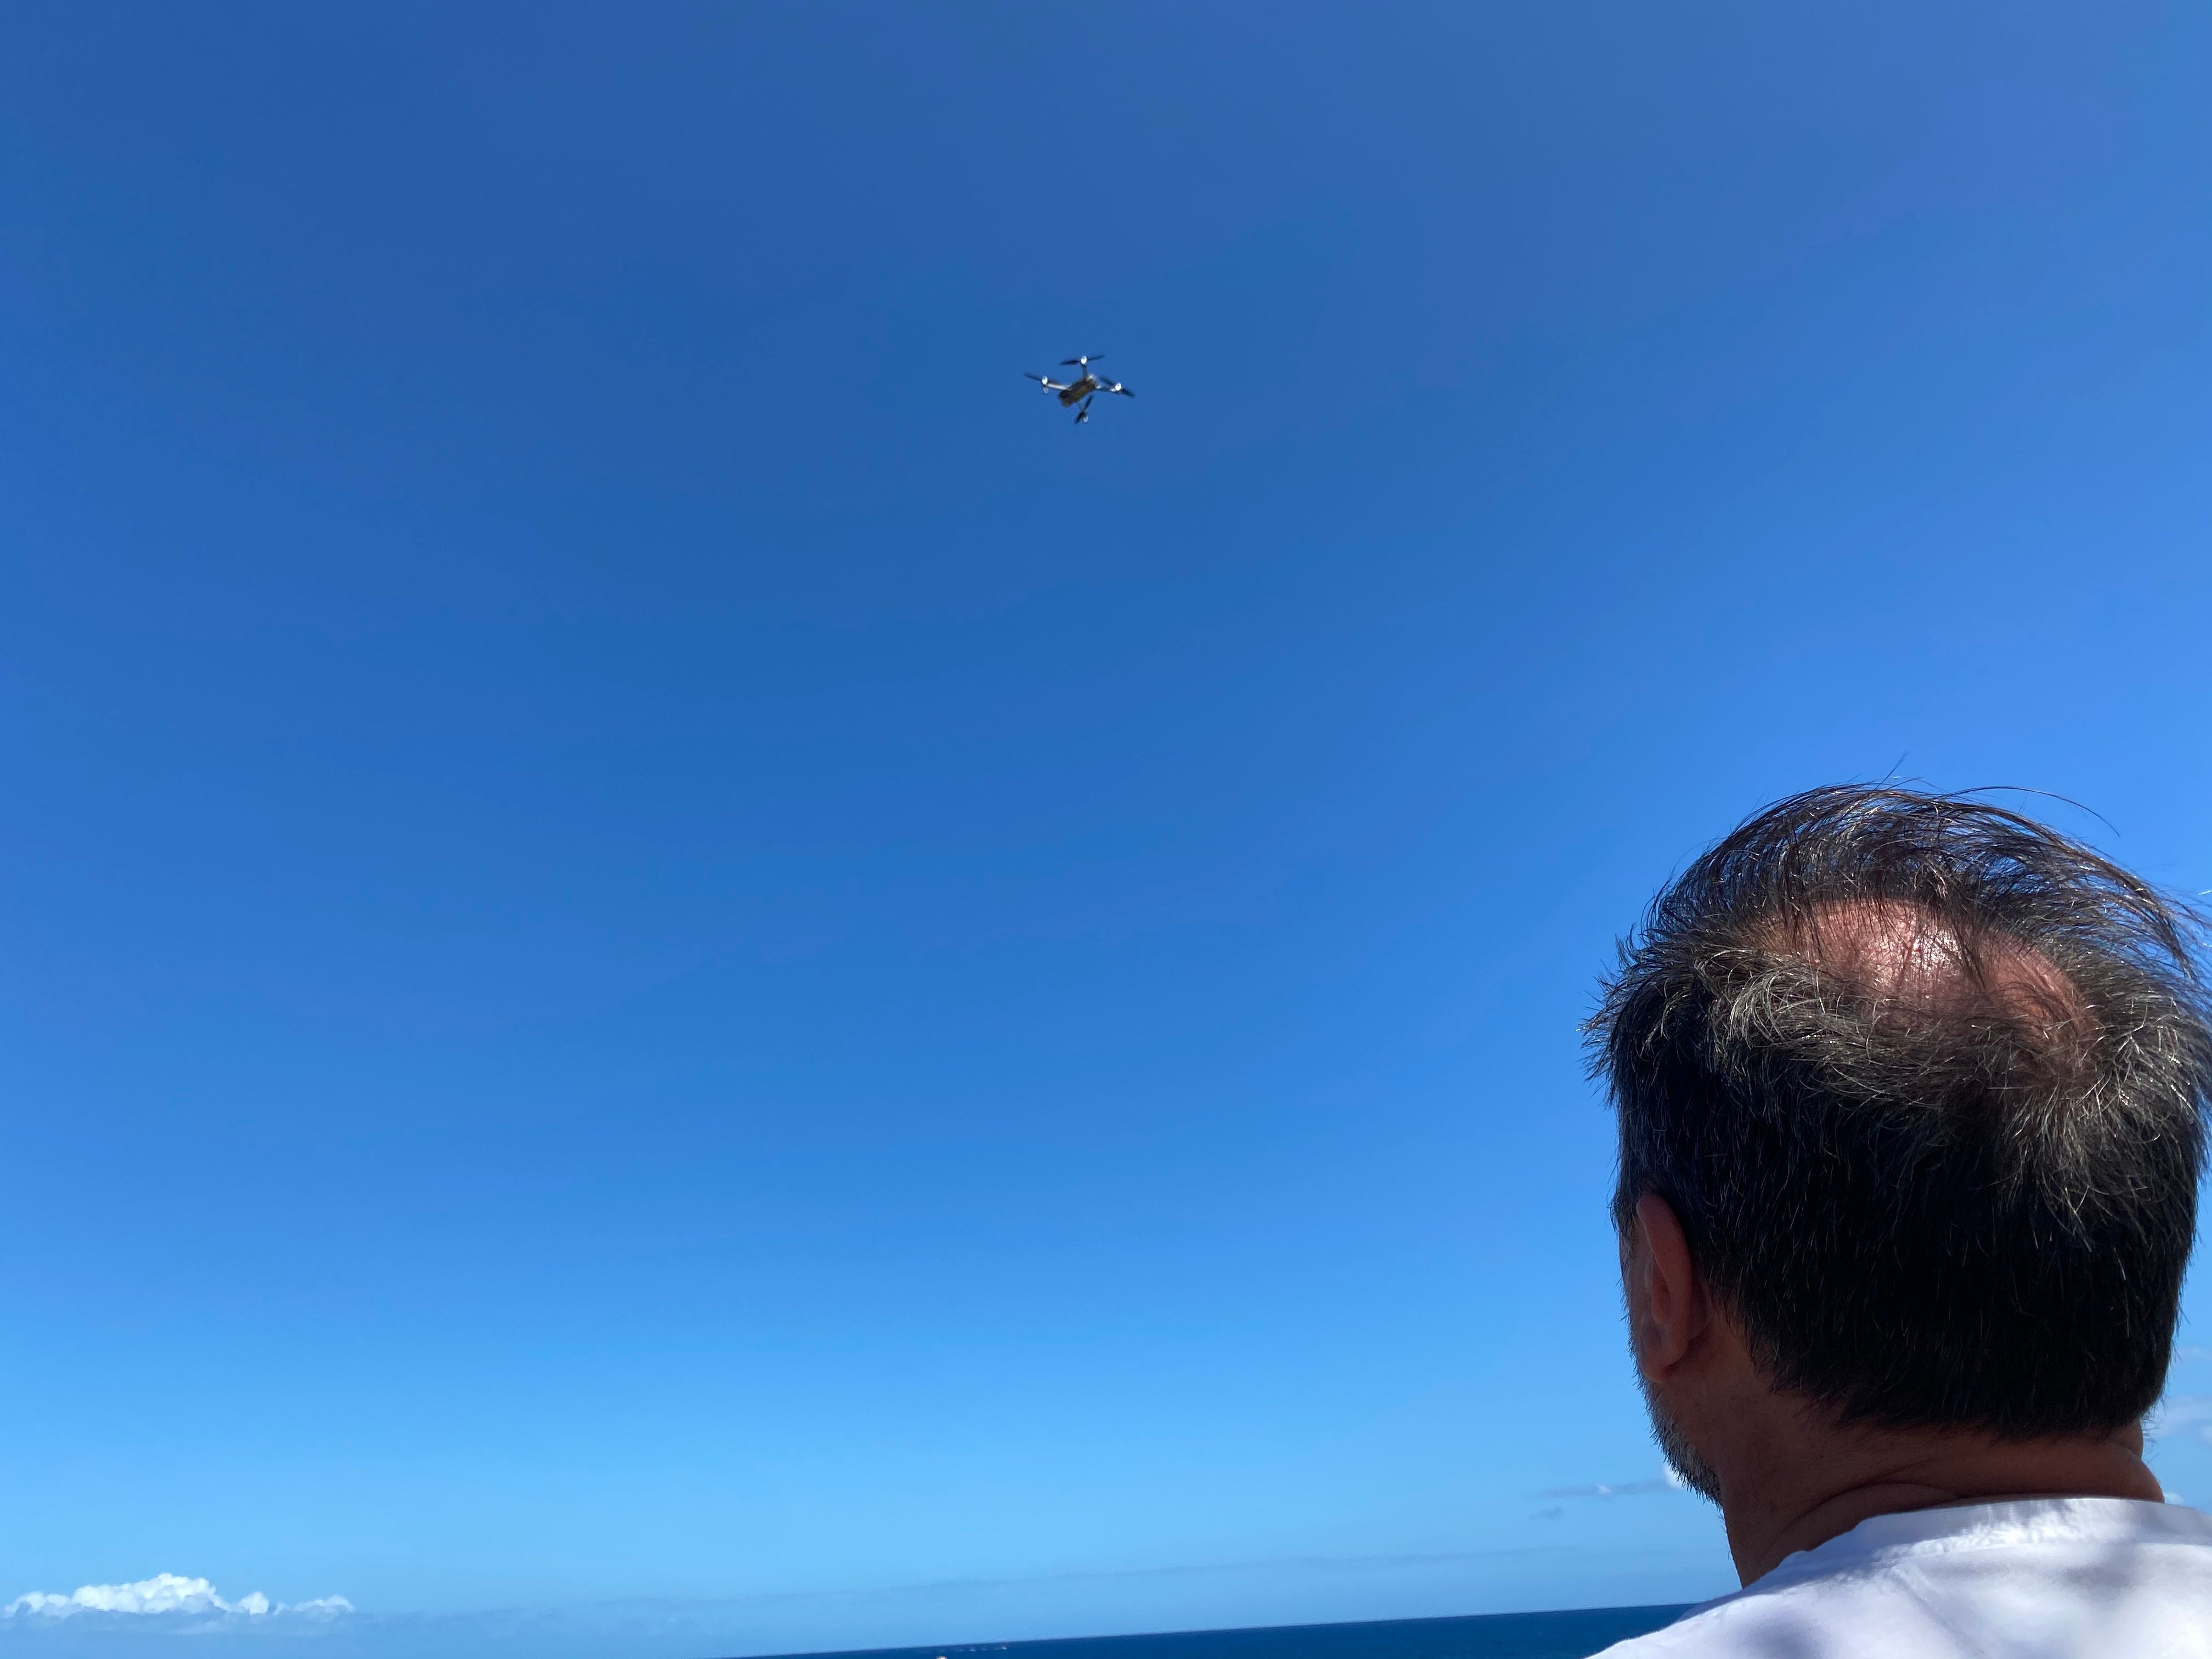 Cours de prise de vue cinématique avec drone professionnel